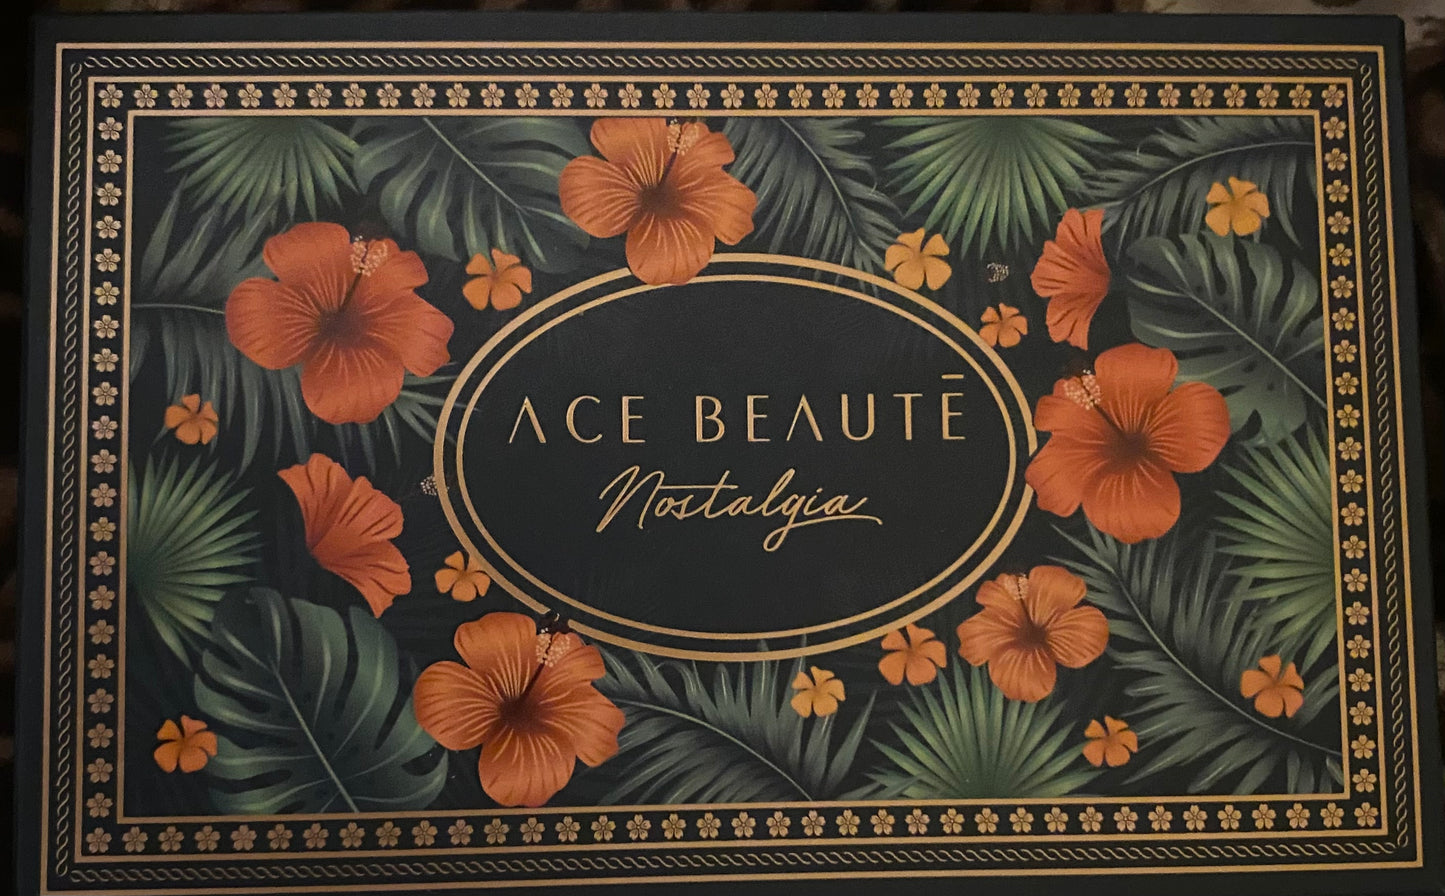 Ace Beaute eyeshadow palette